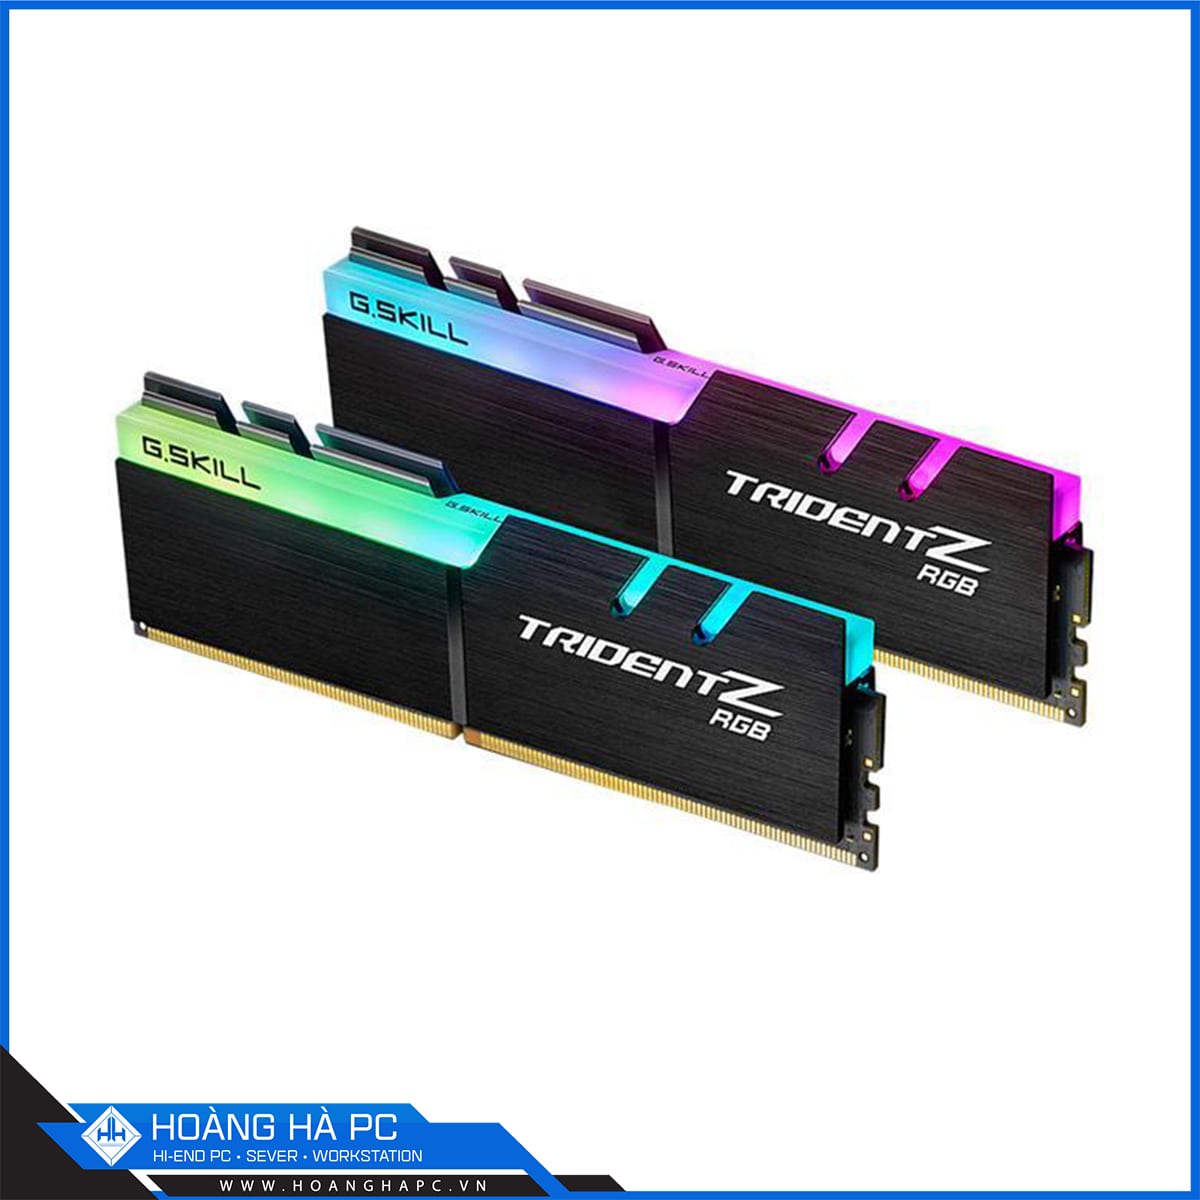 Bộ Nhớ RAM G.Skill TRIDENT Z RGB 16GB (2x8GB) DDR4 3000MHz (F4-3000C16D-16GTZR)